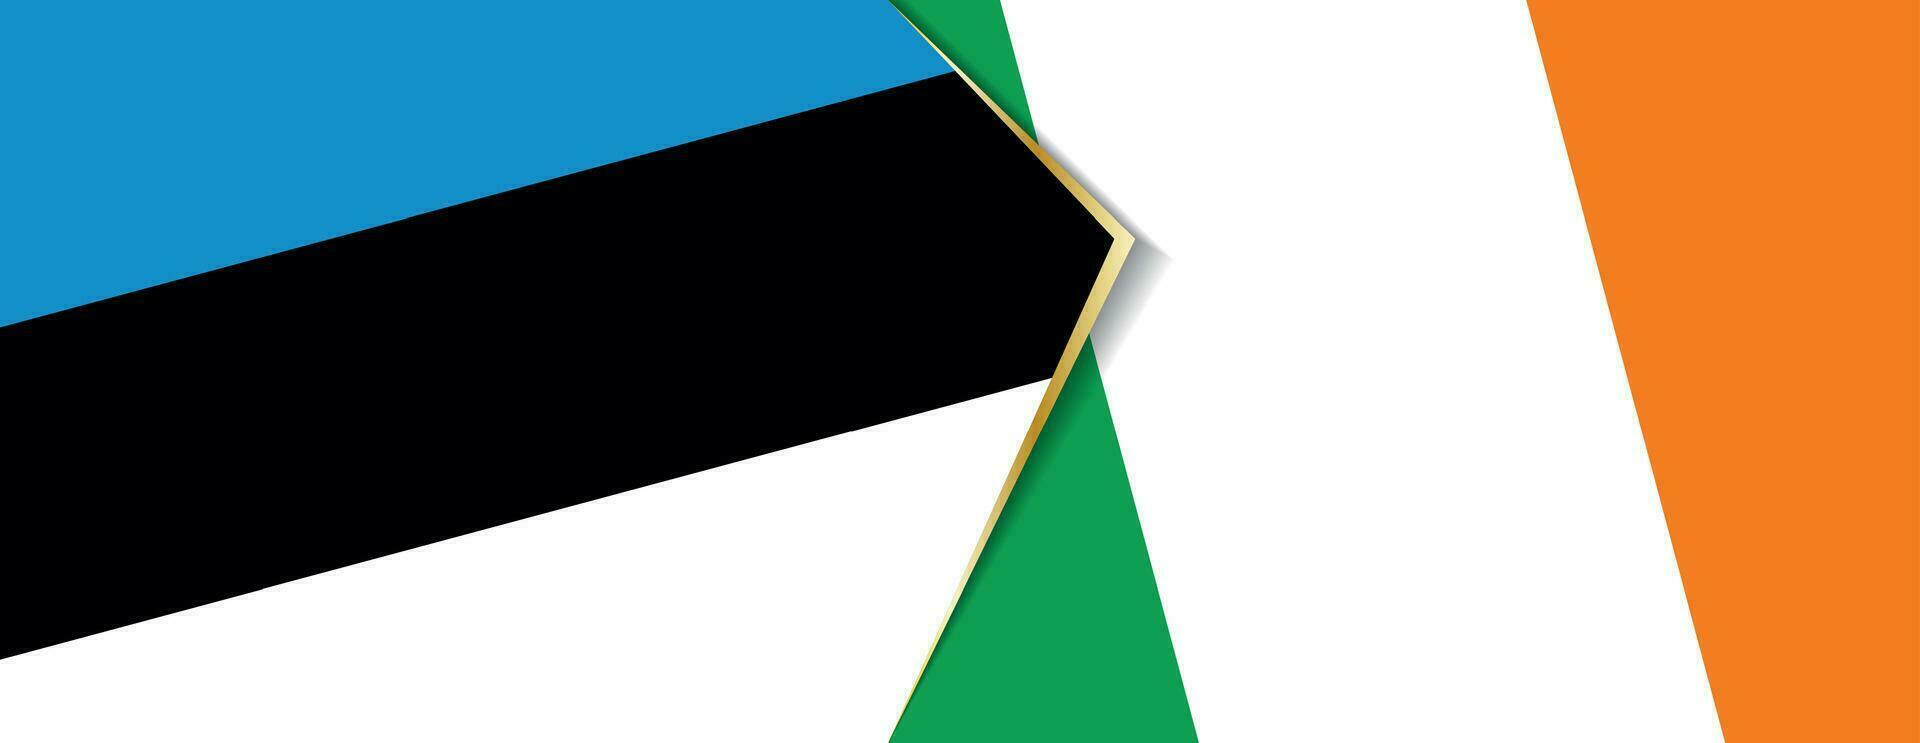 Estland und Irland Flaggen, zwei Vektor Flaggen.